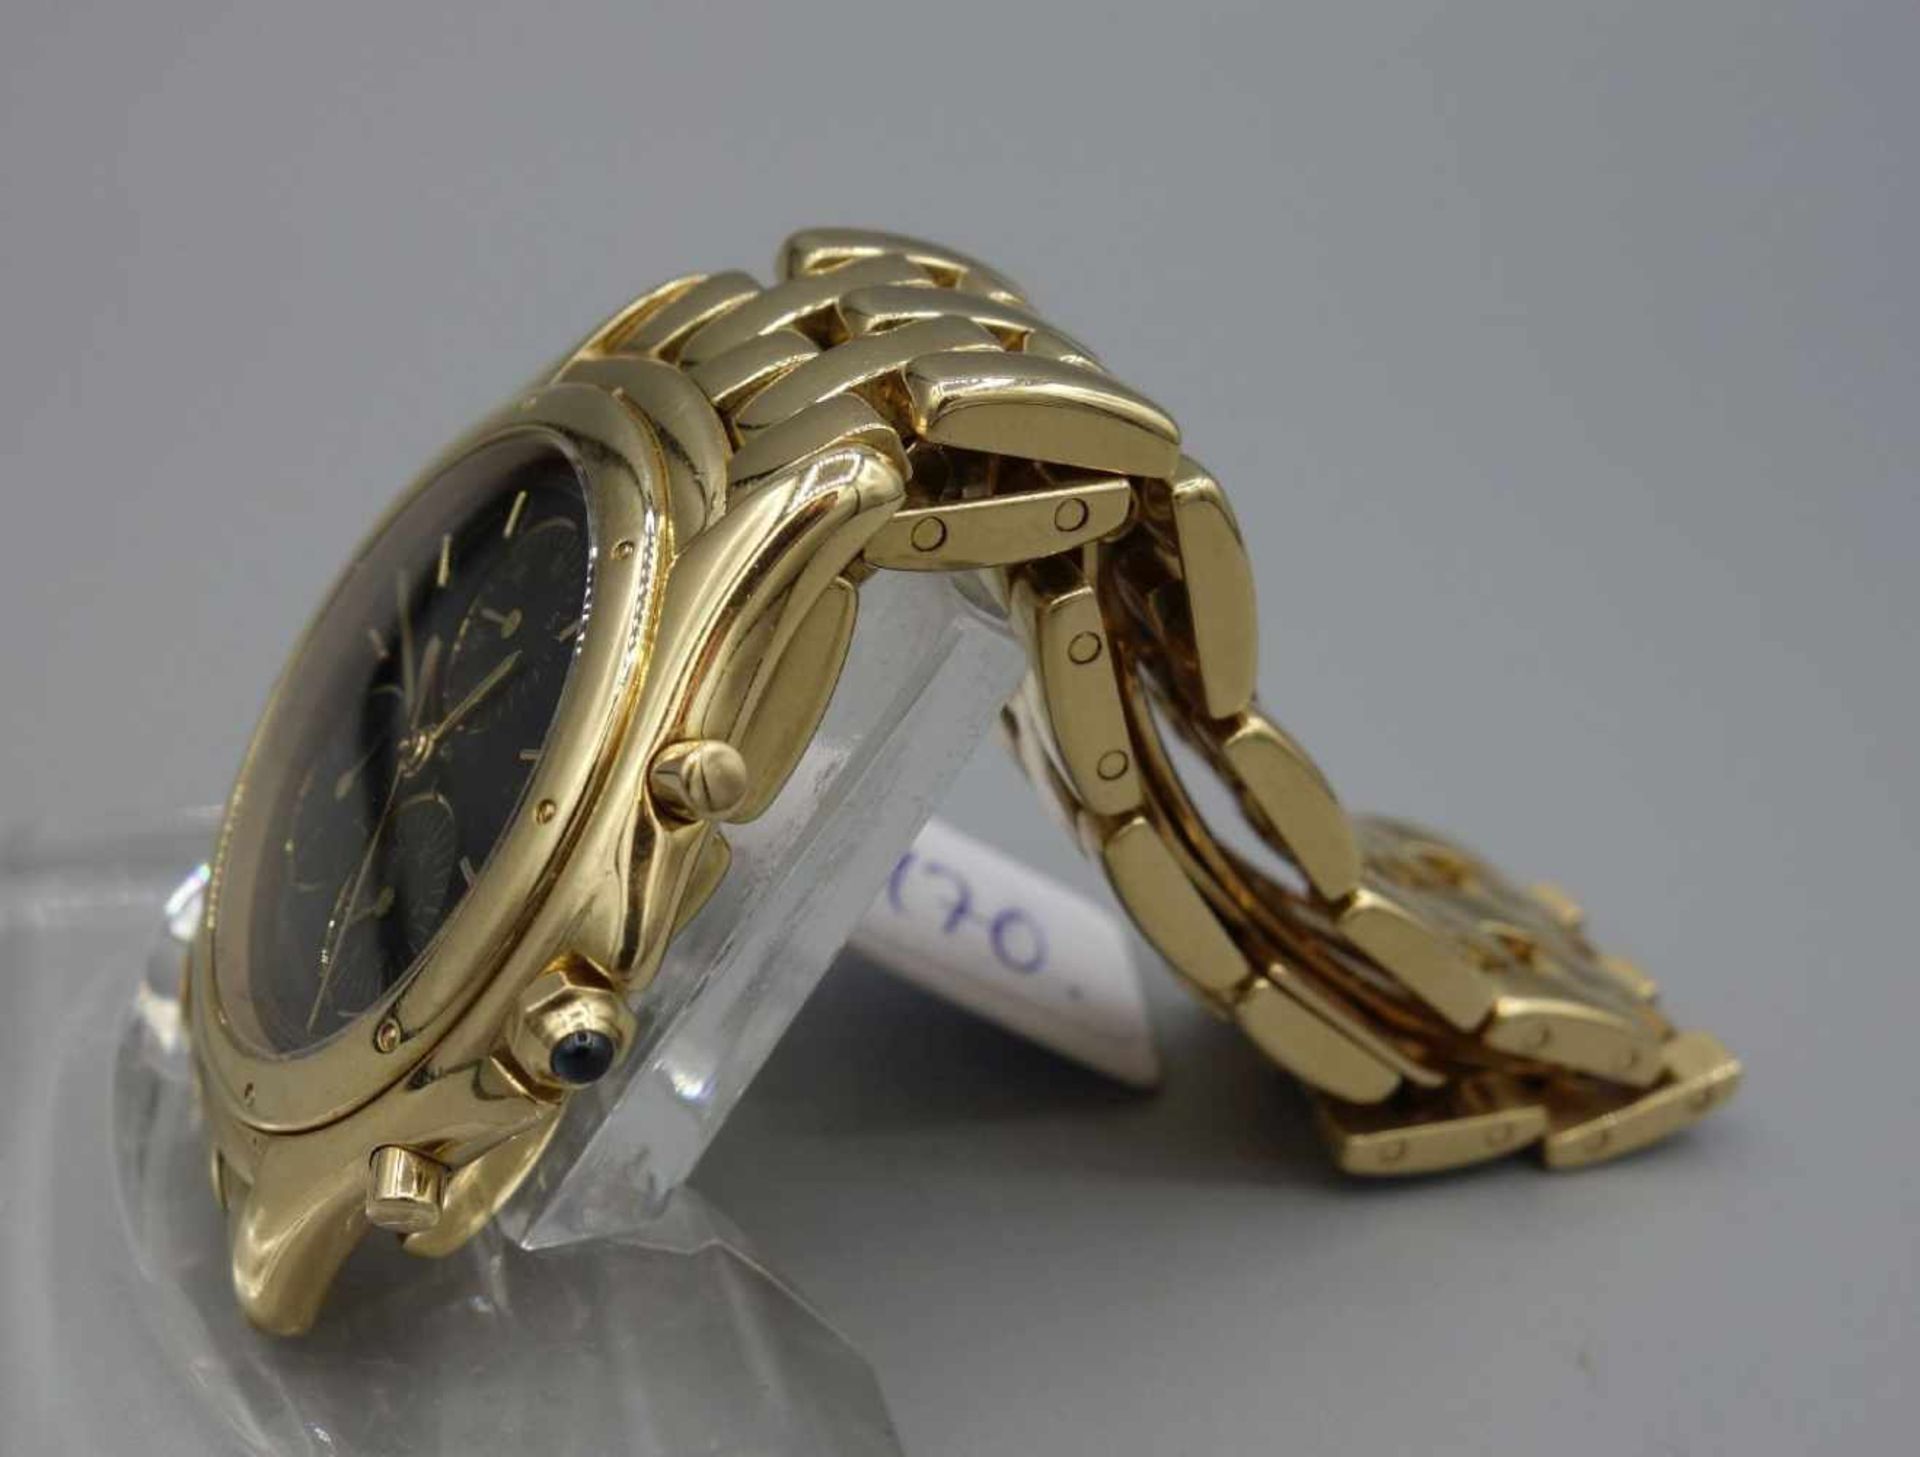 GOLDENE ARMBANDUHR / CHRONOGRAPH - CARTIER COUGAR / wristwatch, Quarz-Uhr, Manufaktur Cartier SA / - Bild 3 aus 7